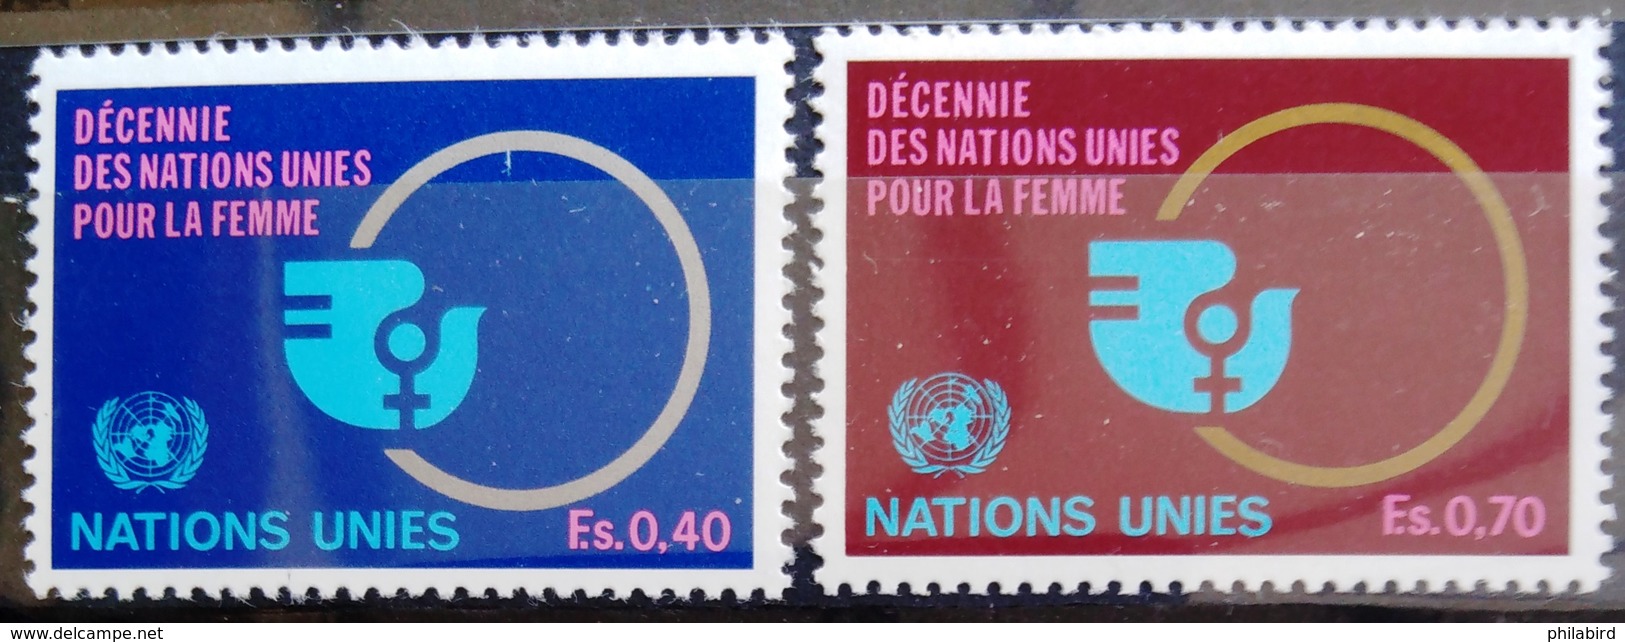 NATIONS-UNIS  GENEVE                  N° 89/90                      NEUF** - Ungebraucht